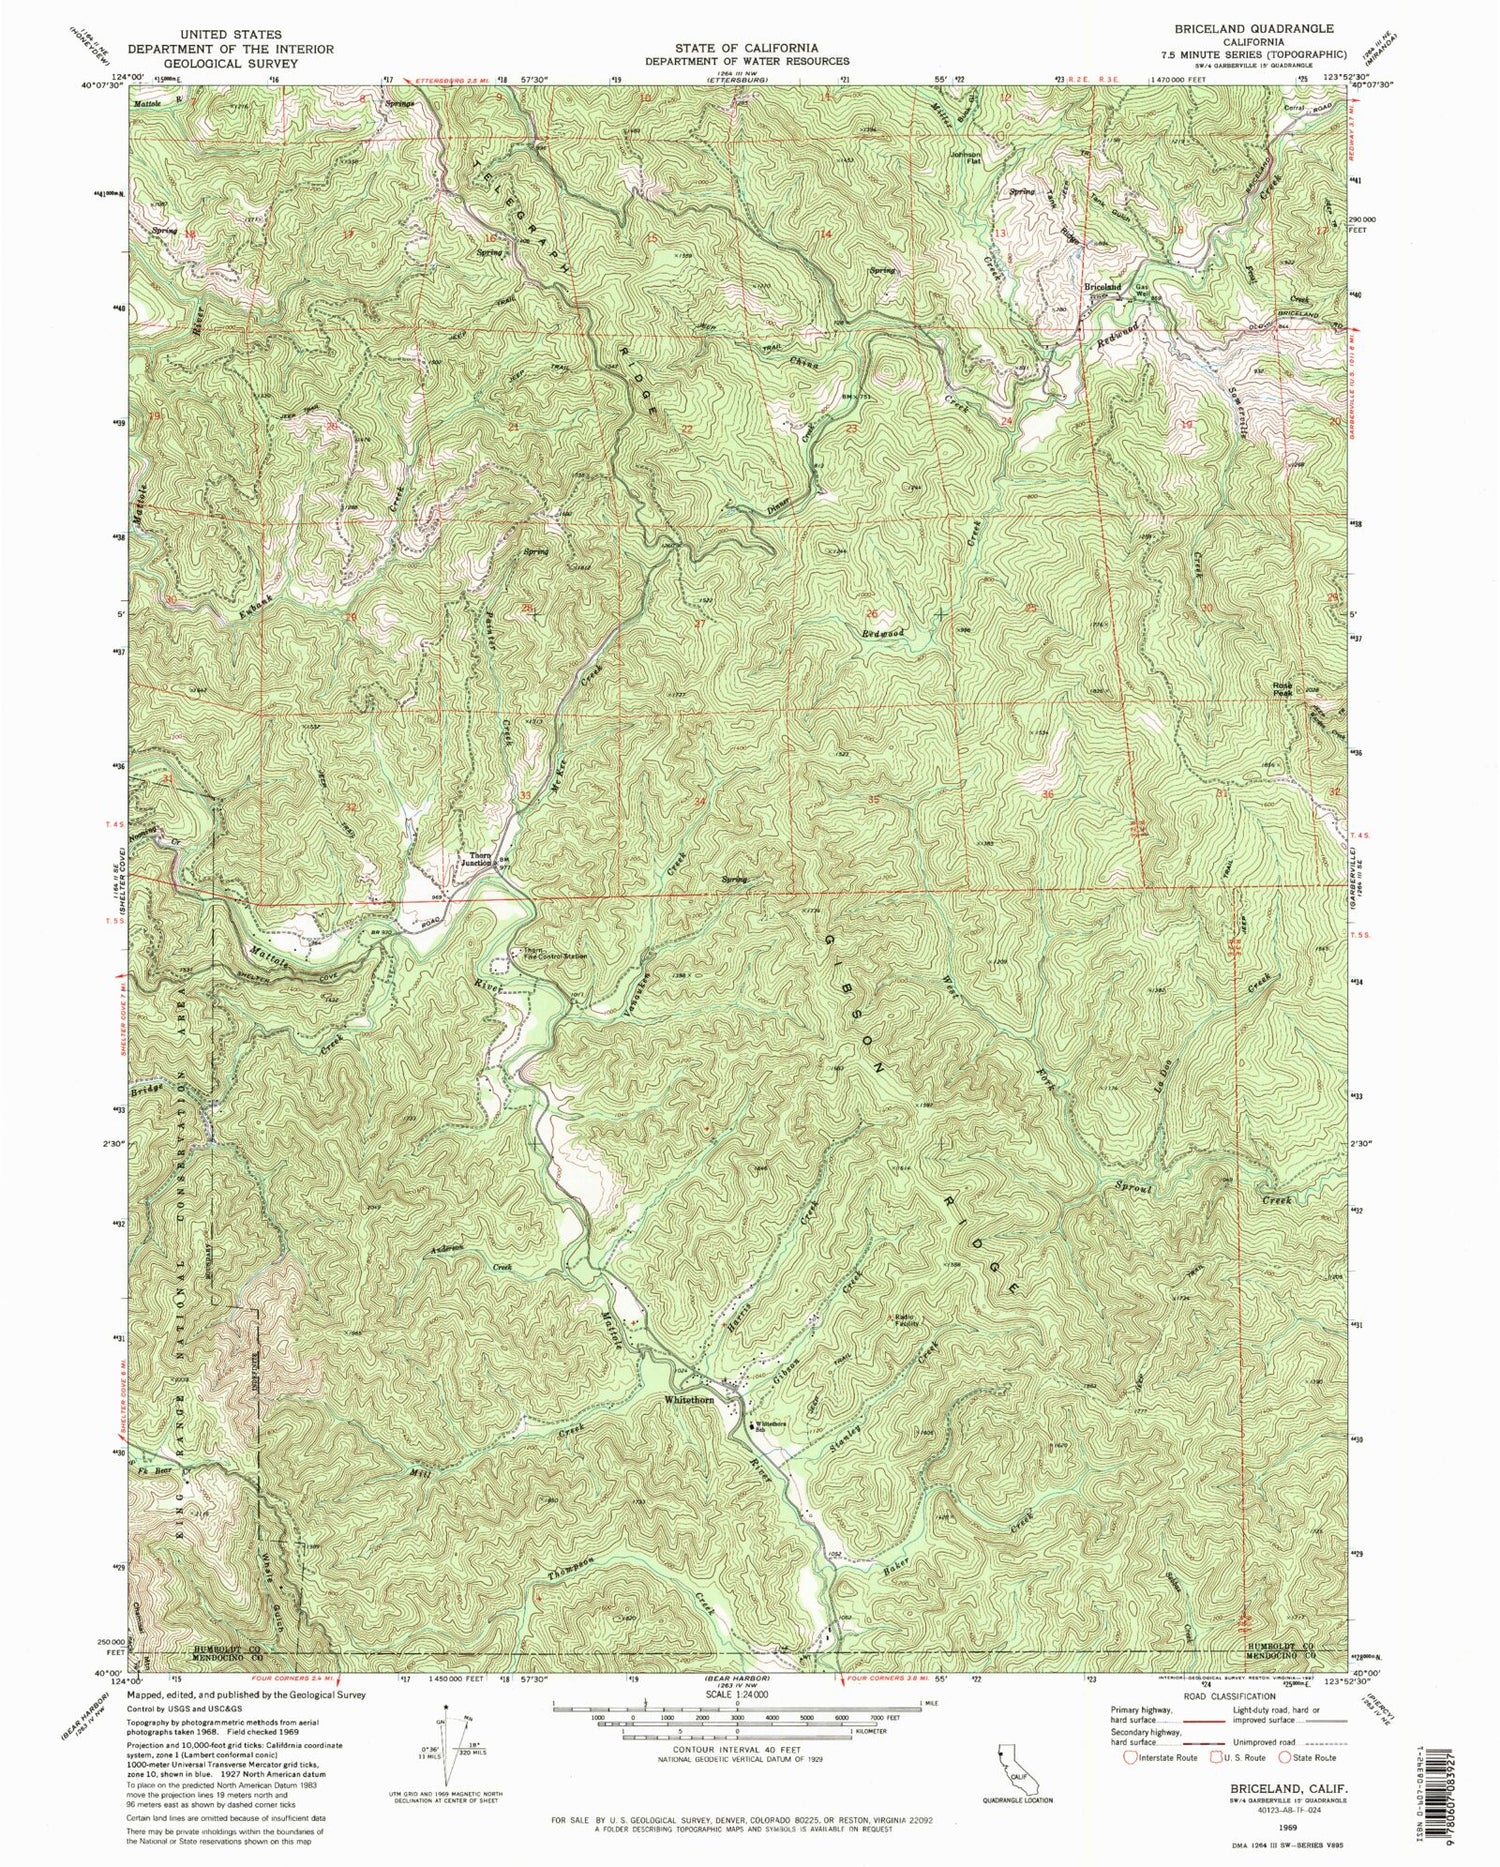 Classic USGS Briceland California 7.5'x7.5' Topo Map Image